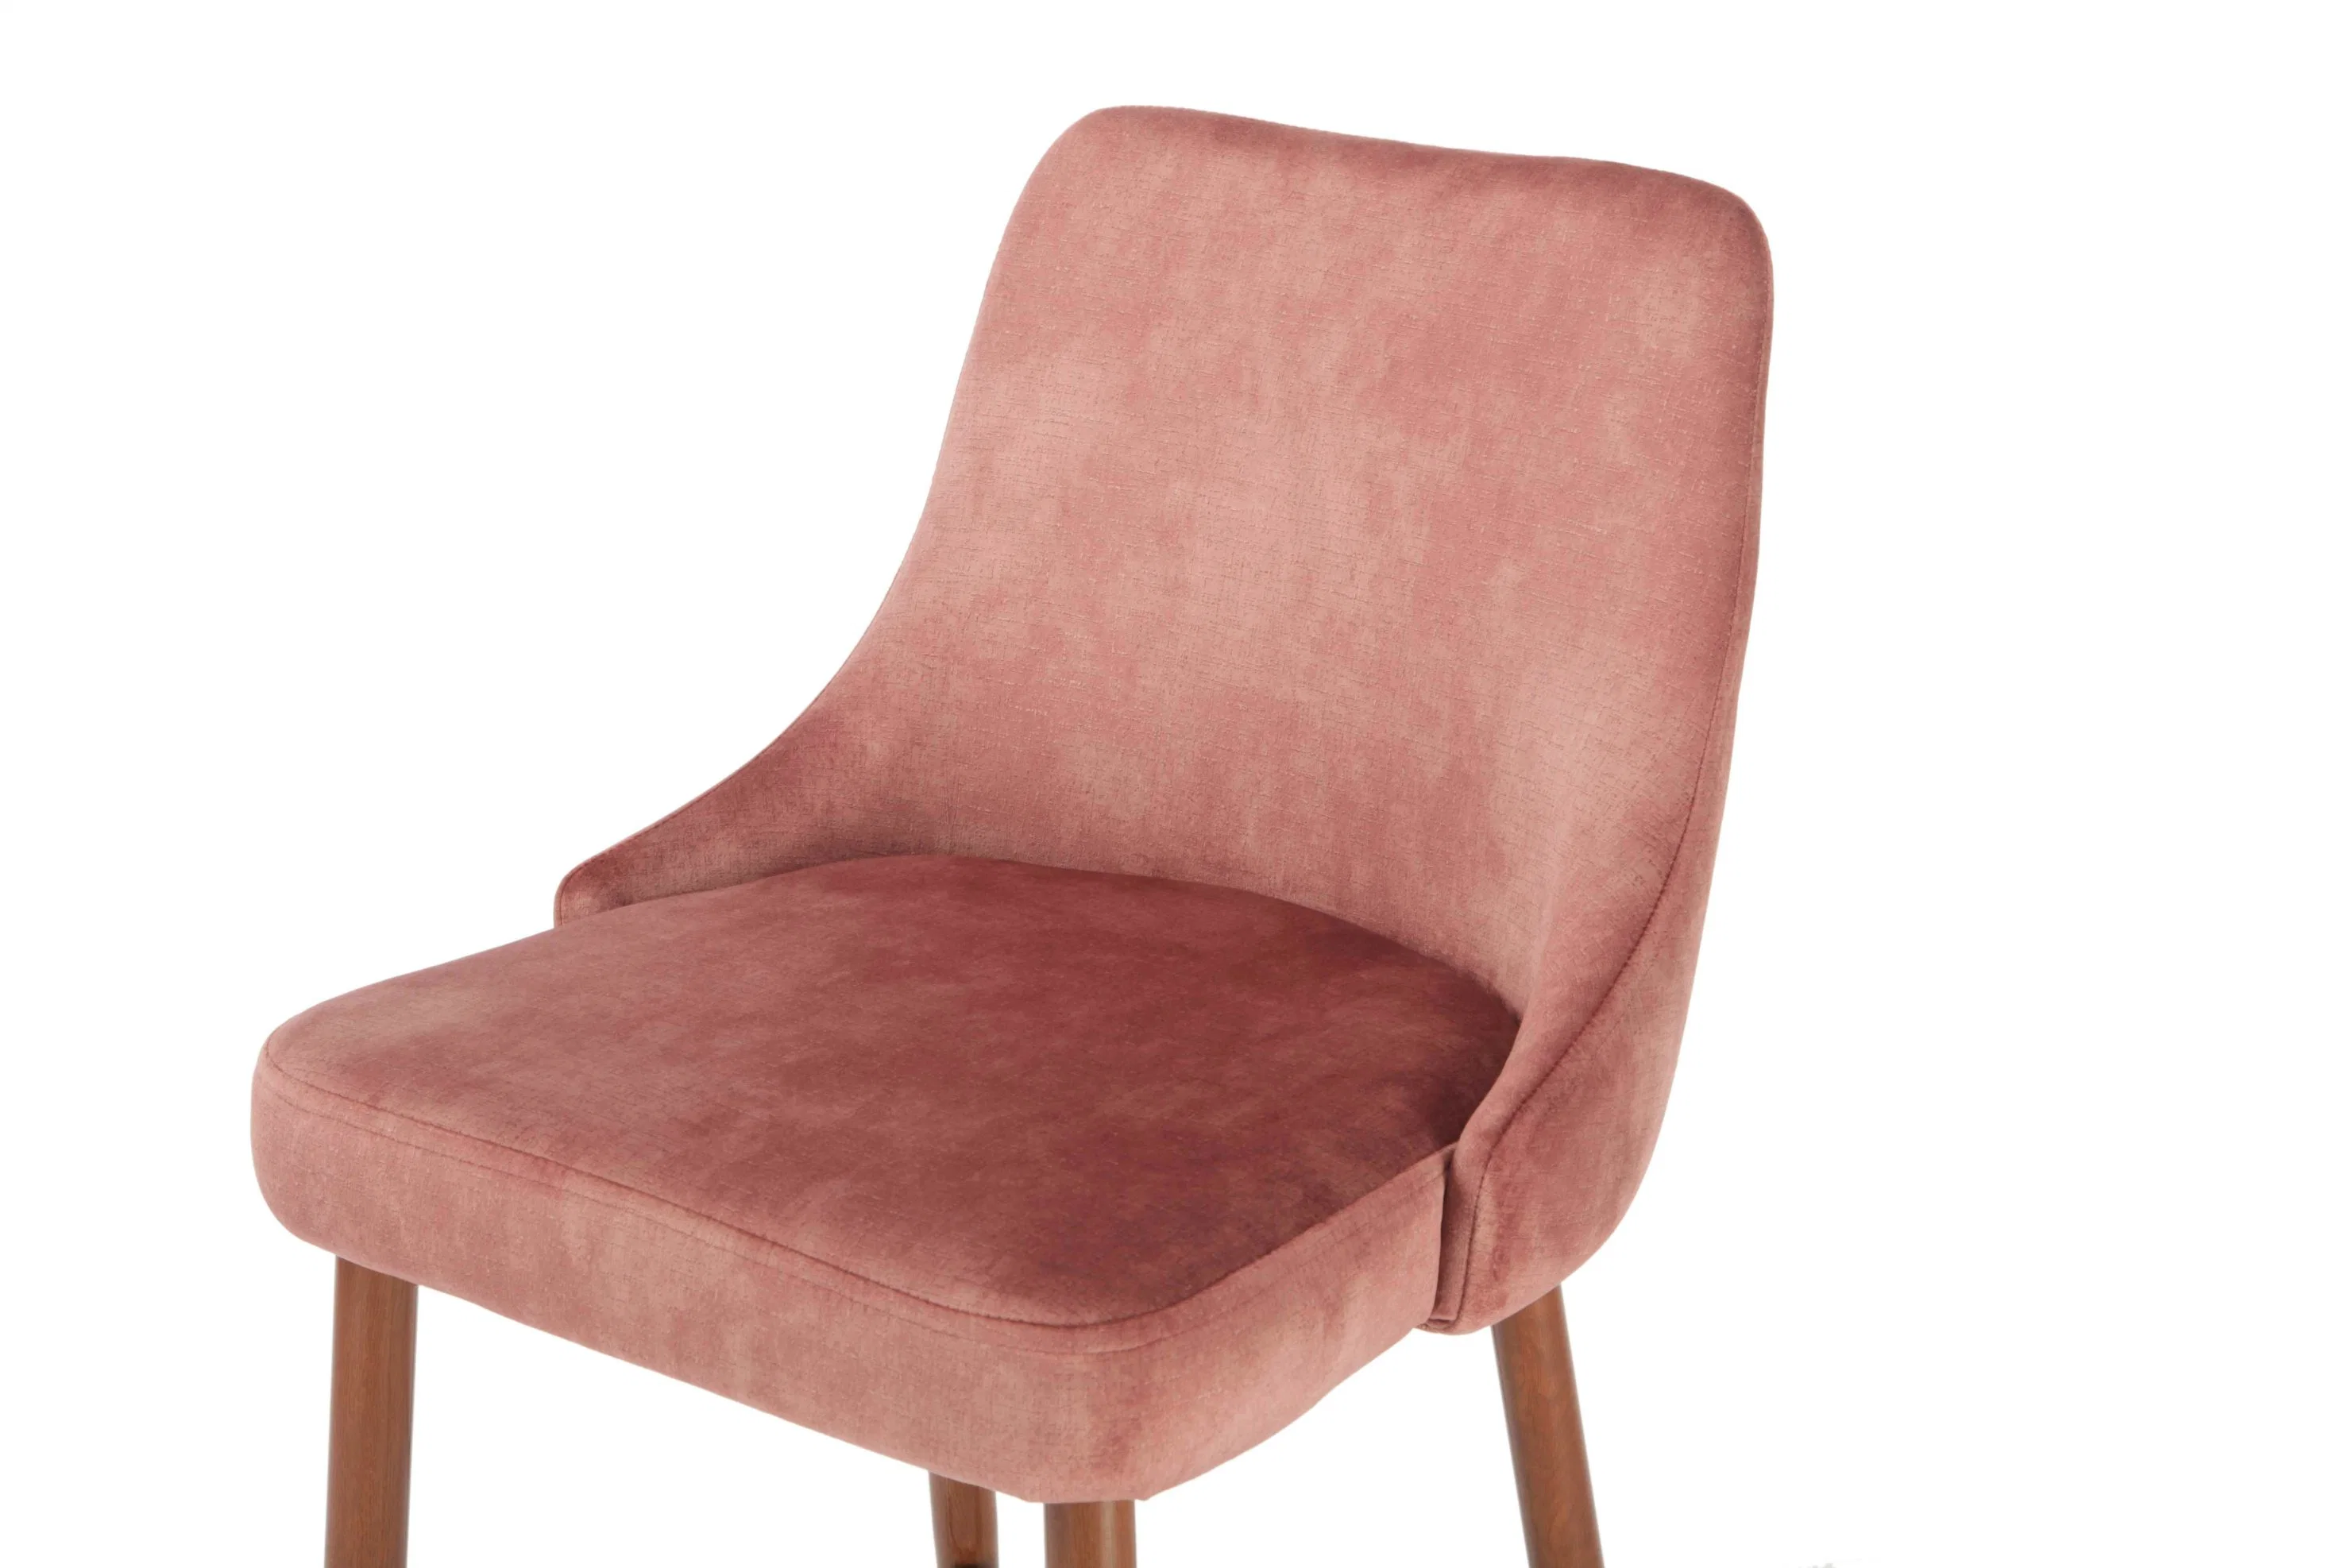 Wholesale/Supplier Kitchen Chair Modern Bar Chair Furniture